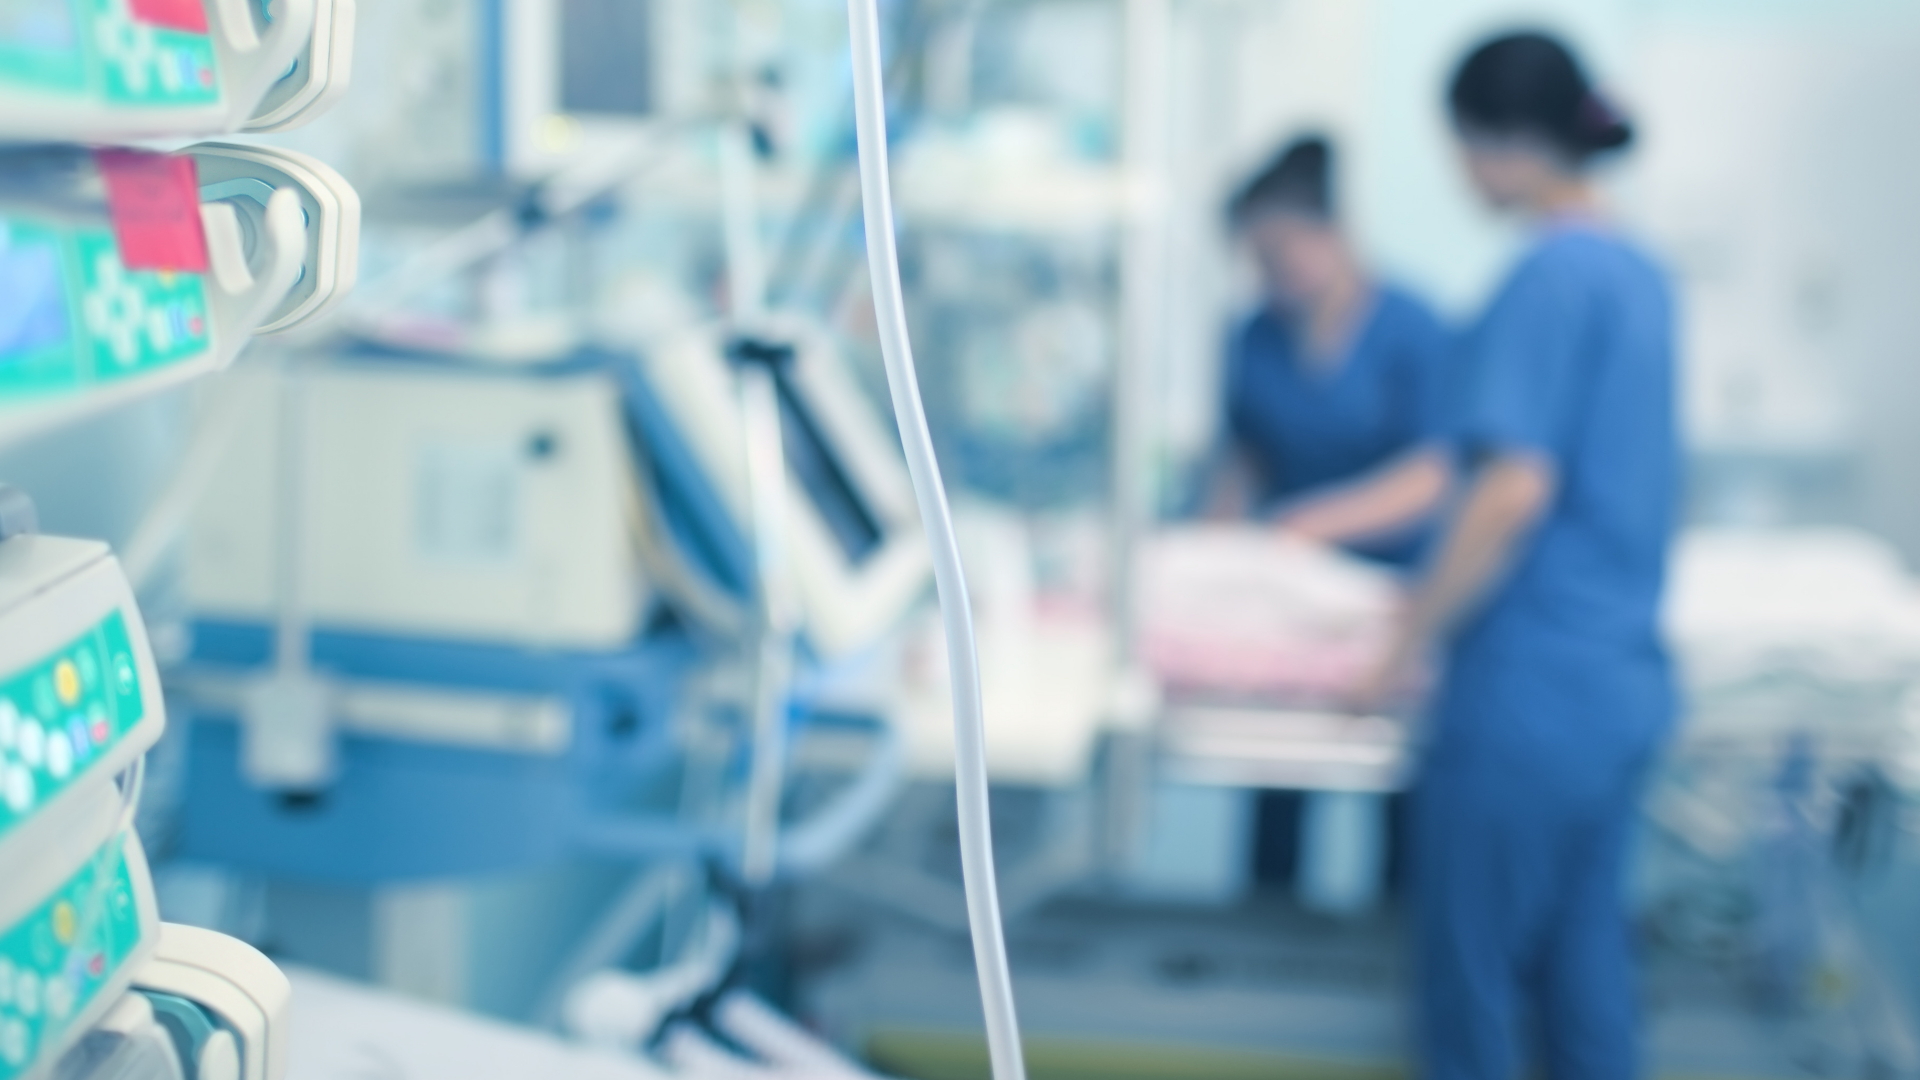 Pläne für Krankenhausreform: Das Ende der Fallpauschalen?